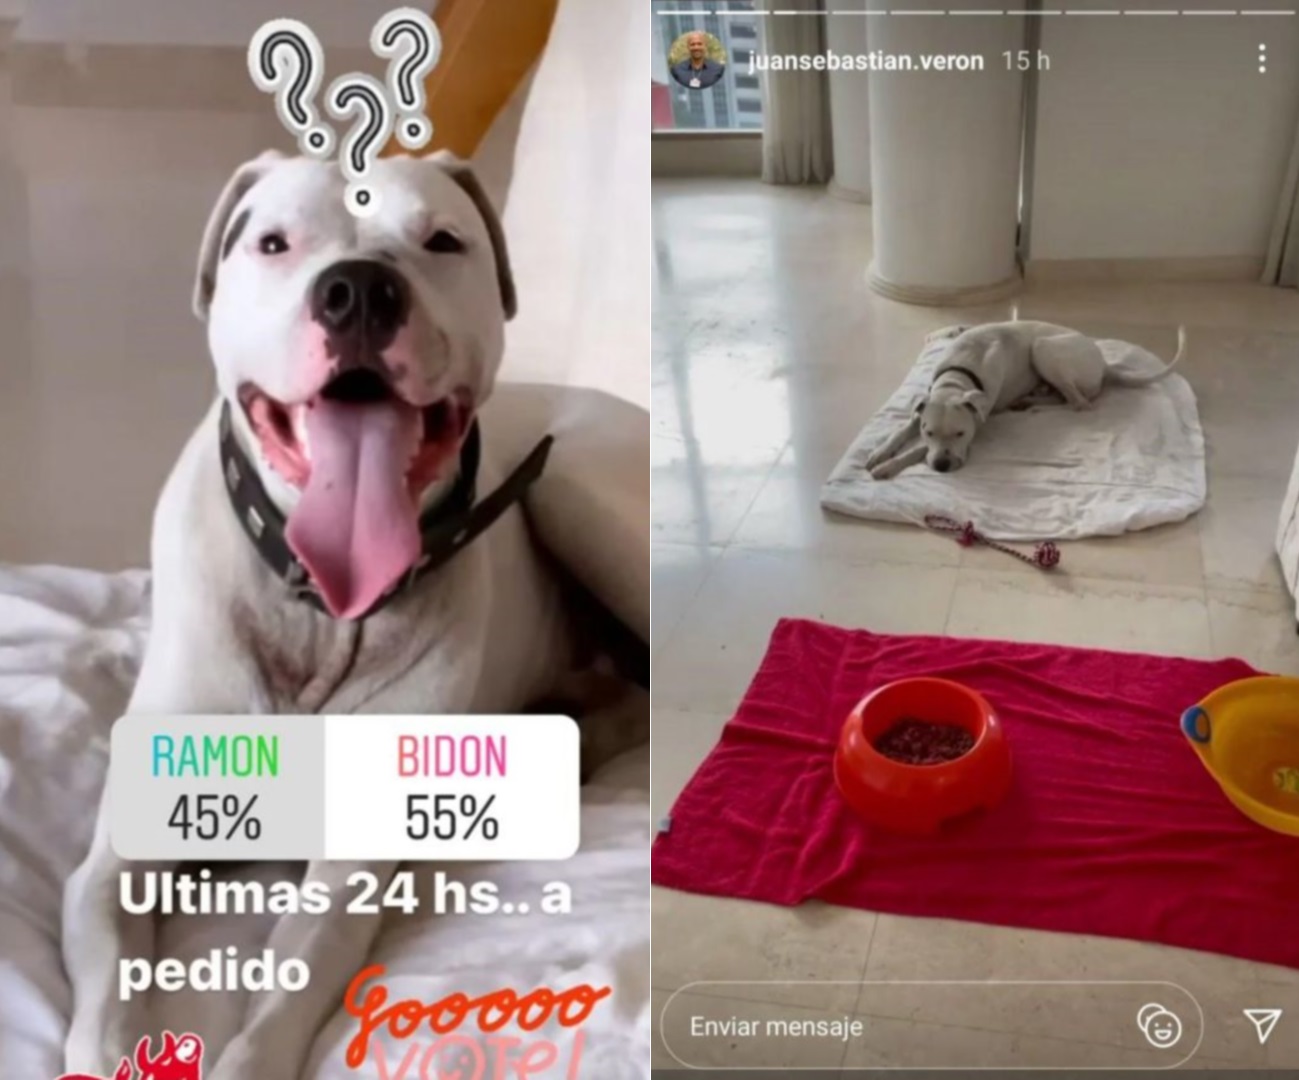 La Bruja también lanzó una encuesta en su Instagram para que los seguidores escojan un nombre para el perro: Ramón se terminó imponiendo a Bidón